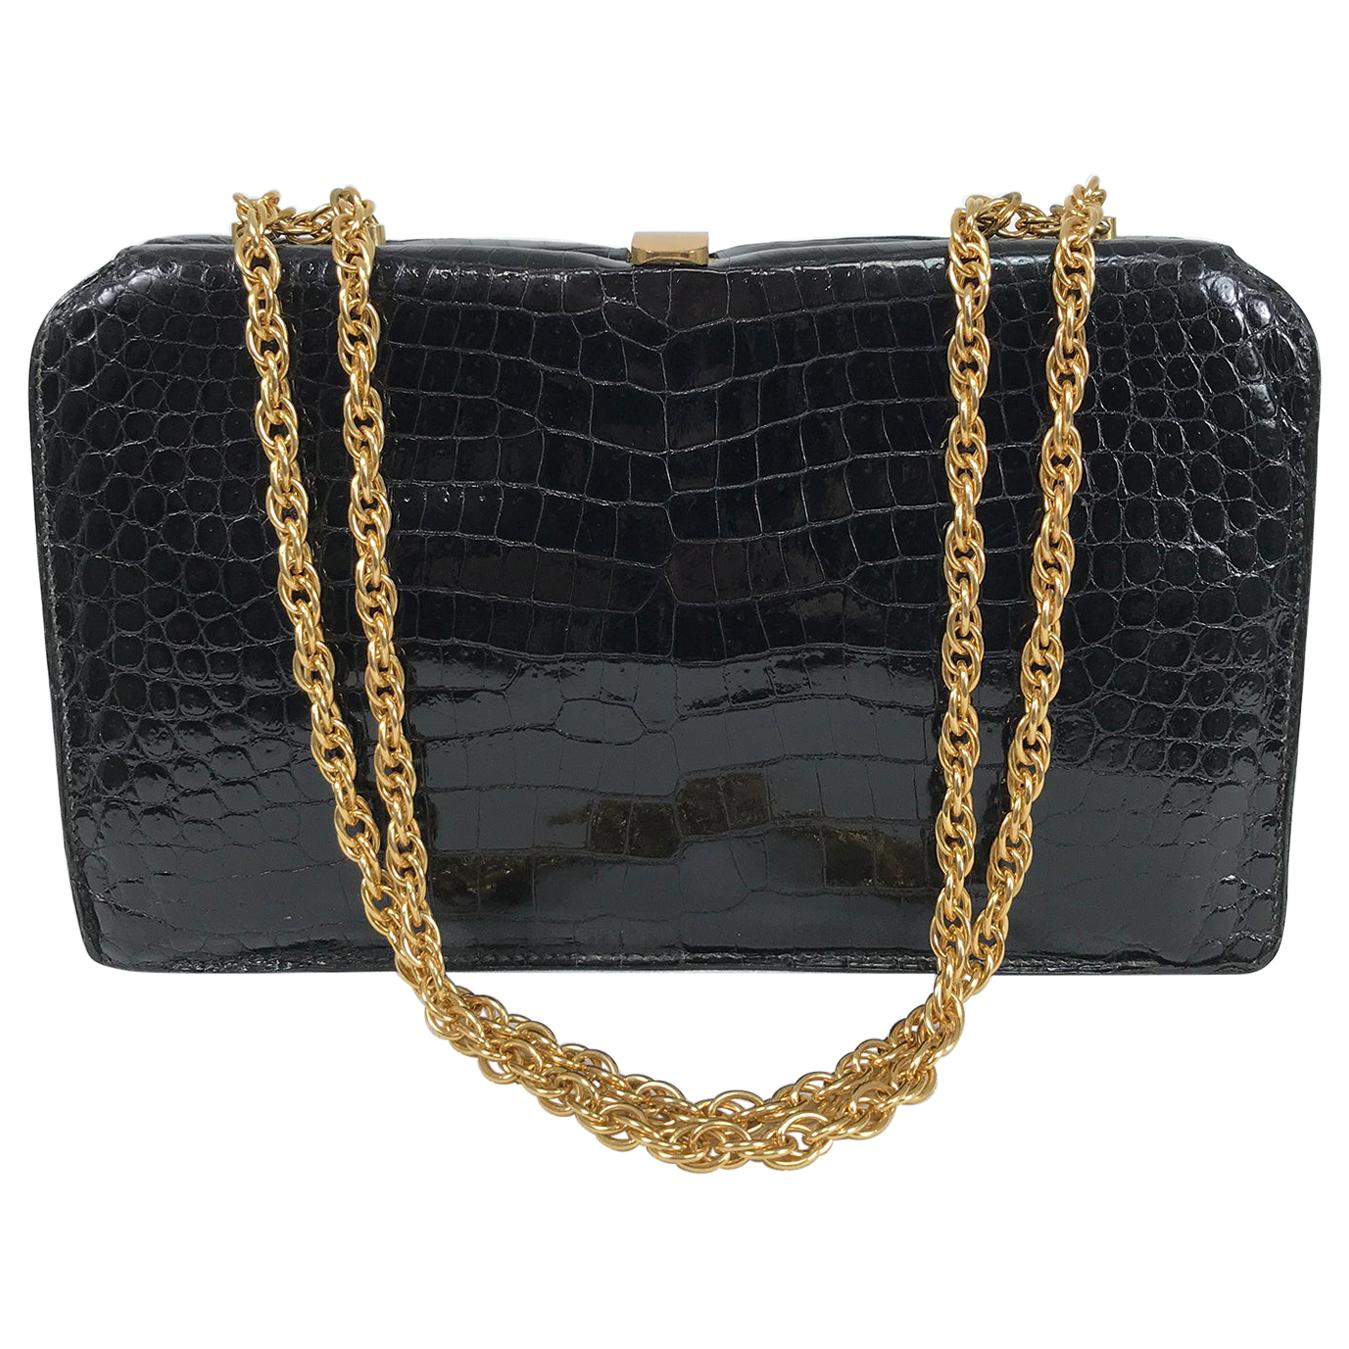 Schitz Paris Rare sac à main en crocodile noir avec quincaillerie dorée 1953. 